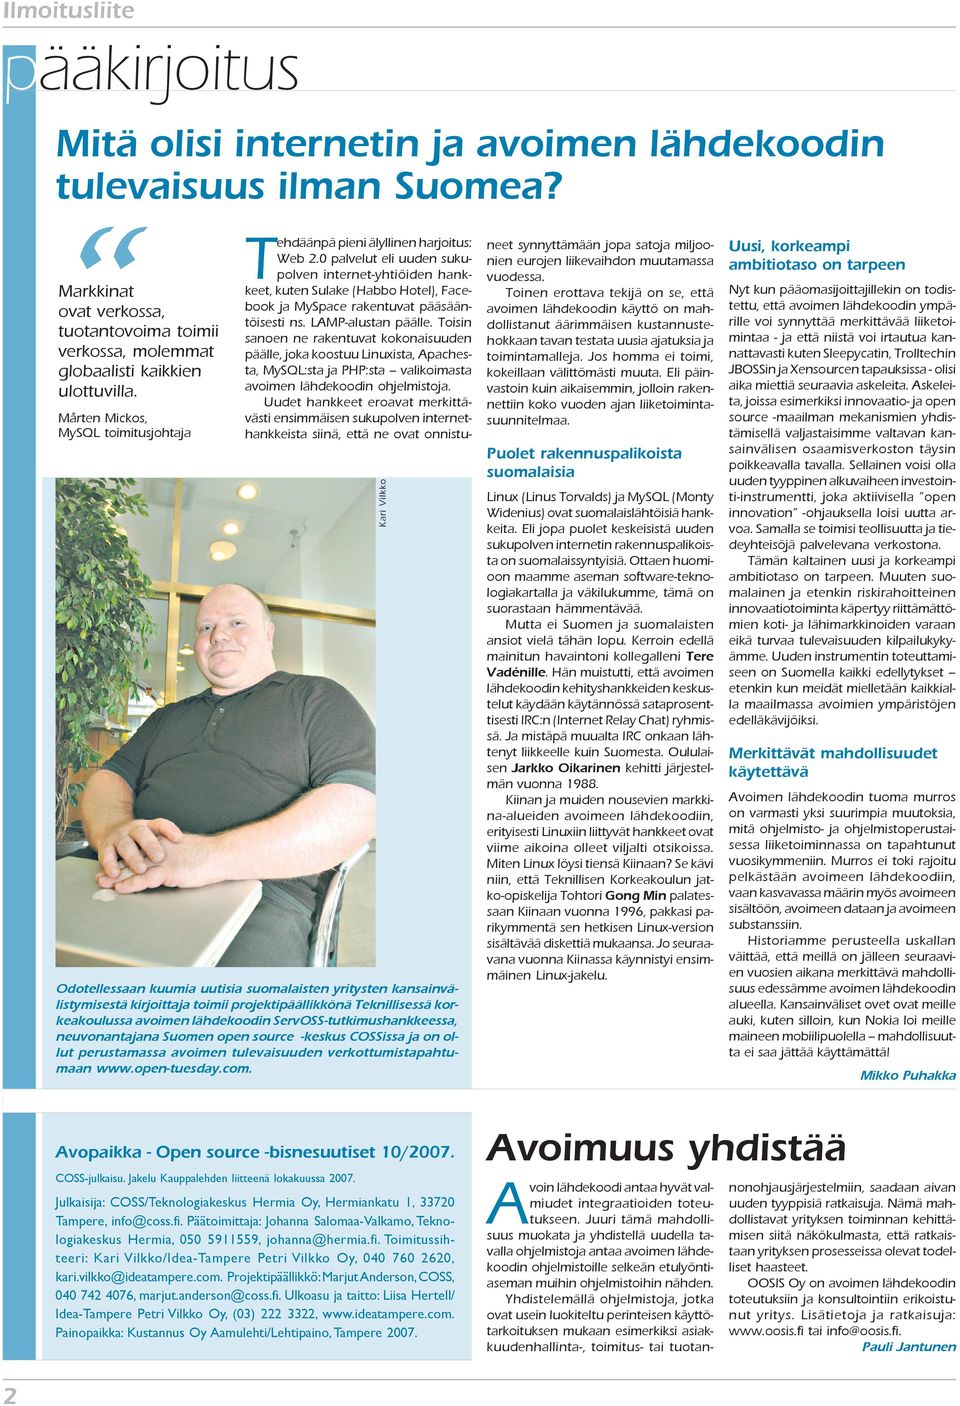 ServOSS-tutkimushankkeessa, neuvonantajana Suomen open source -keskus COSSissa ja on ollut perustamassa avoimen tulevaisuuden verkottumistapahtumaan www.open-tuesday.com.